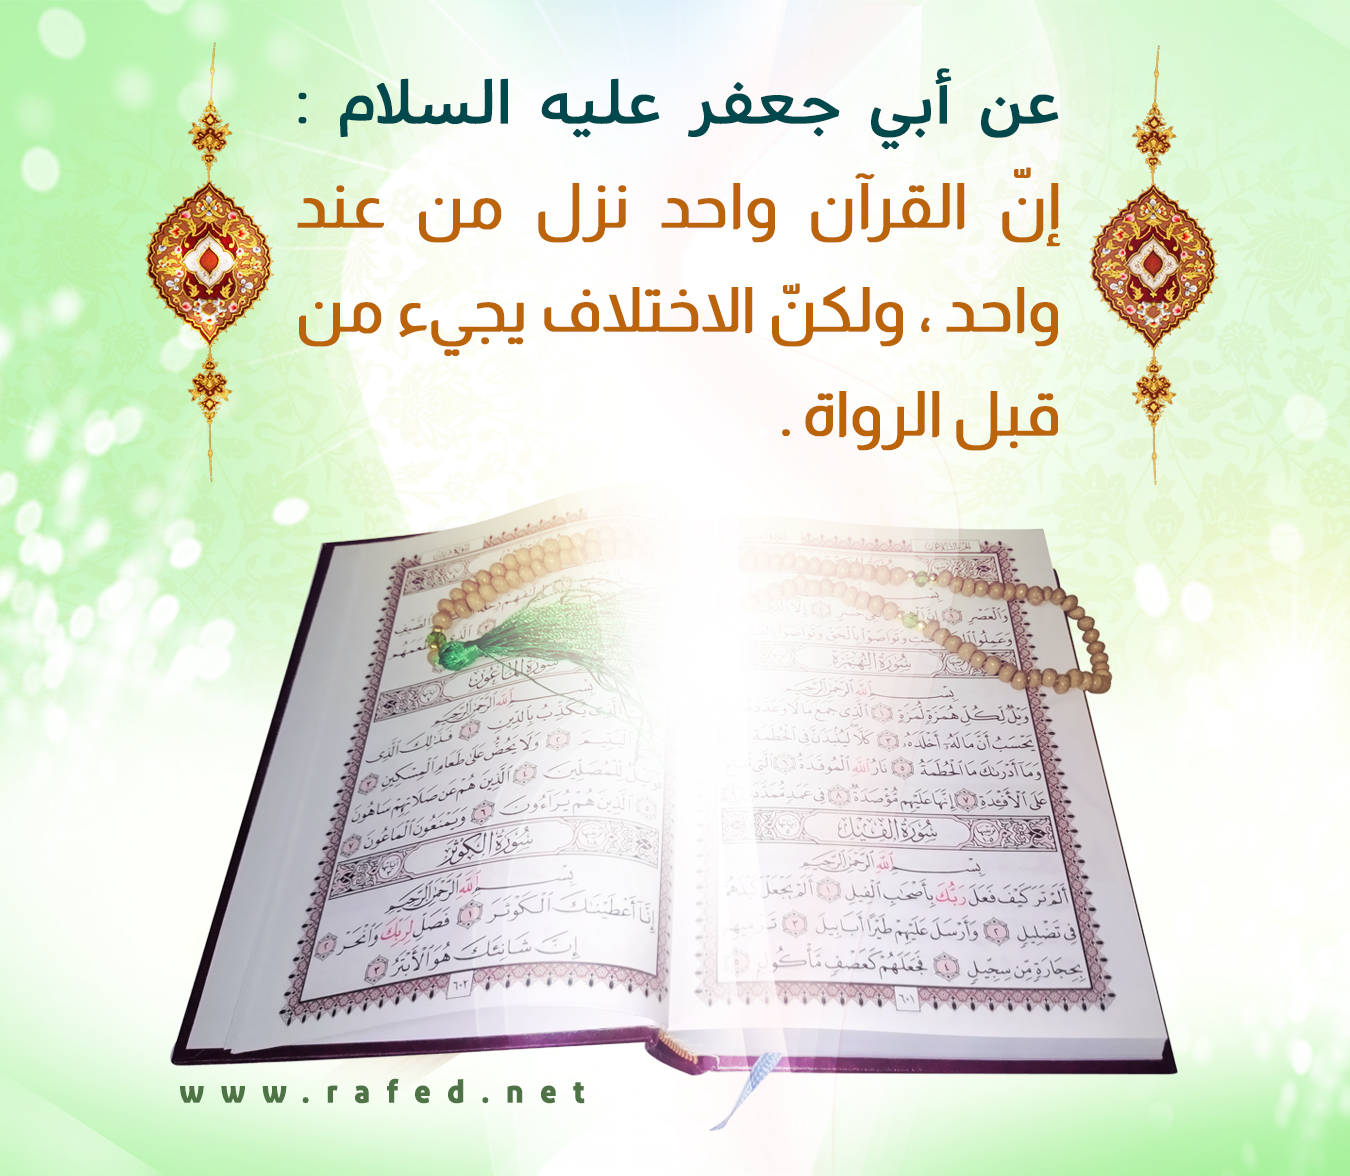 إنّ القرآن واحد نزل من عند واحد ، ولكنّ الاختلاف يجيء من قبل الرواة